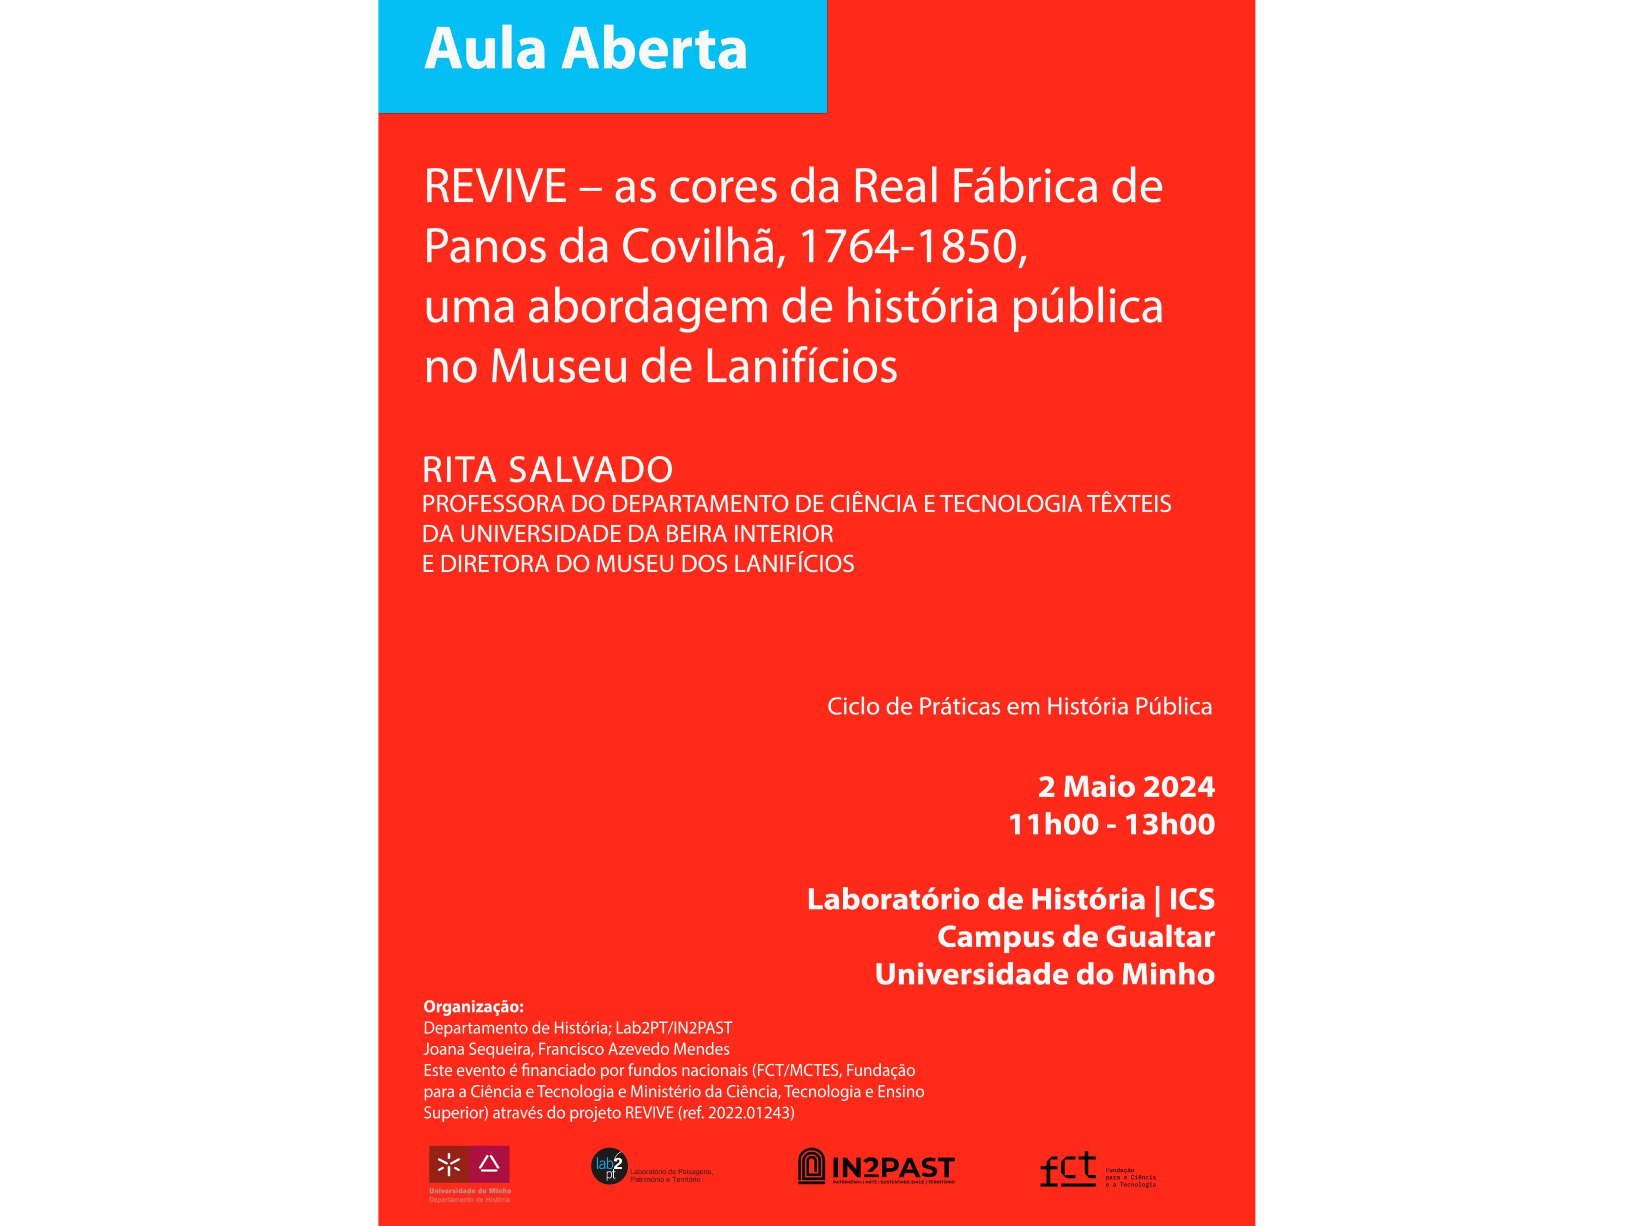 REVIVE – as cores da Real Fábrica de Panos da Covilhã, 1764-1850, uma abordagem de história pública no Museu de Lanifícios image